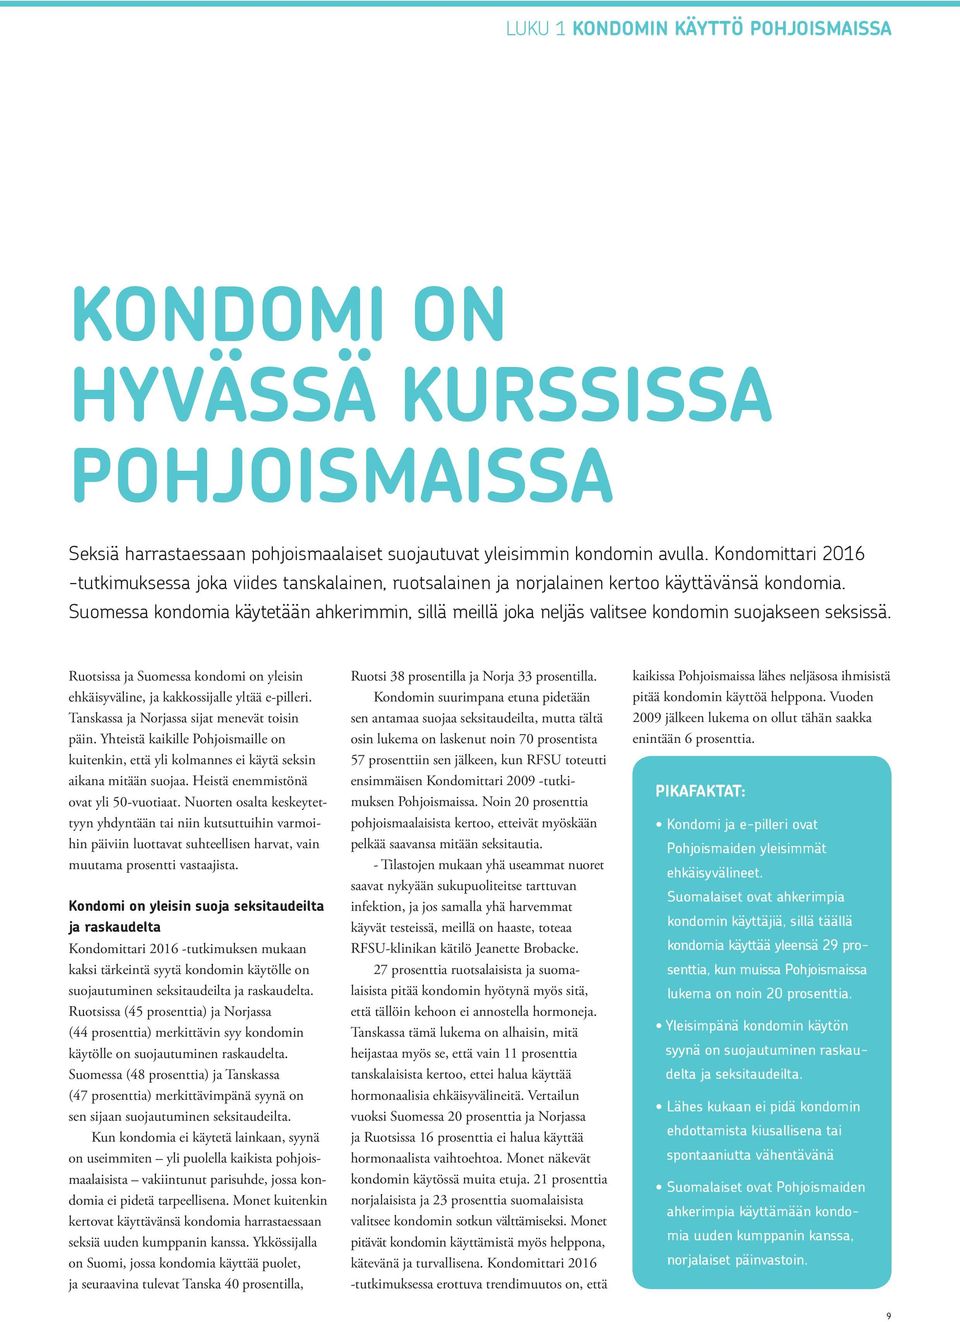 Suomessa kondomia käytetään ahkerimmin, sillä meillä joka neljäs valitsee kondomin suojakseen seksissä. Ruotsissa ja Suomessa kondomi on yleisin ehkäisyväline, ja kakkossijalle yltää e-pilleri.